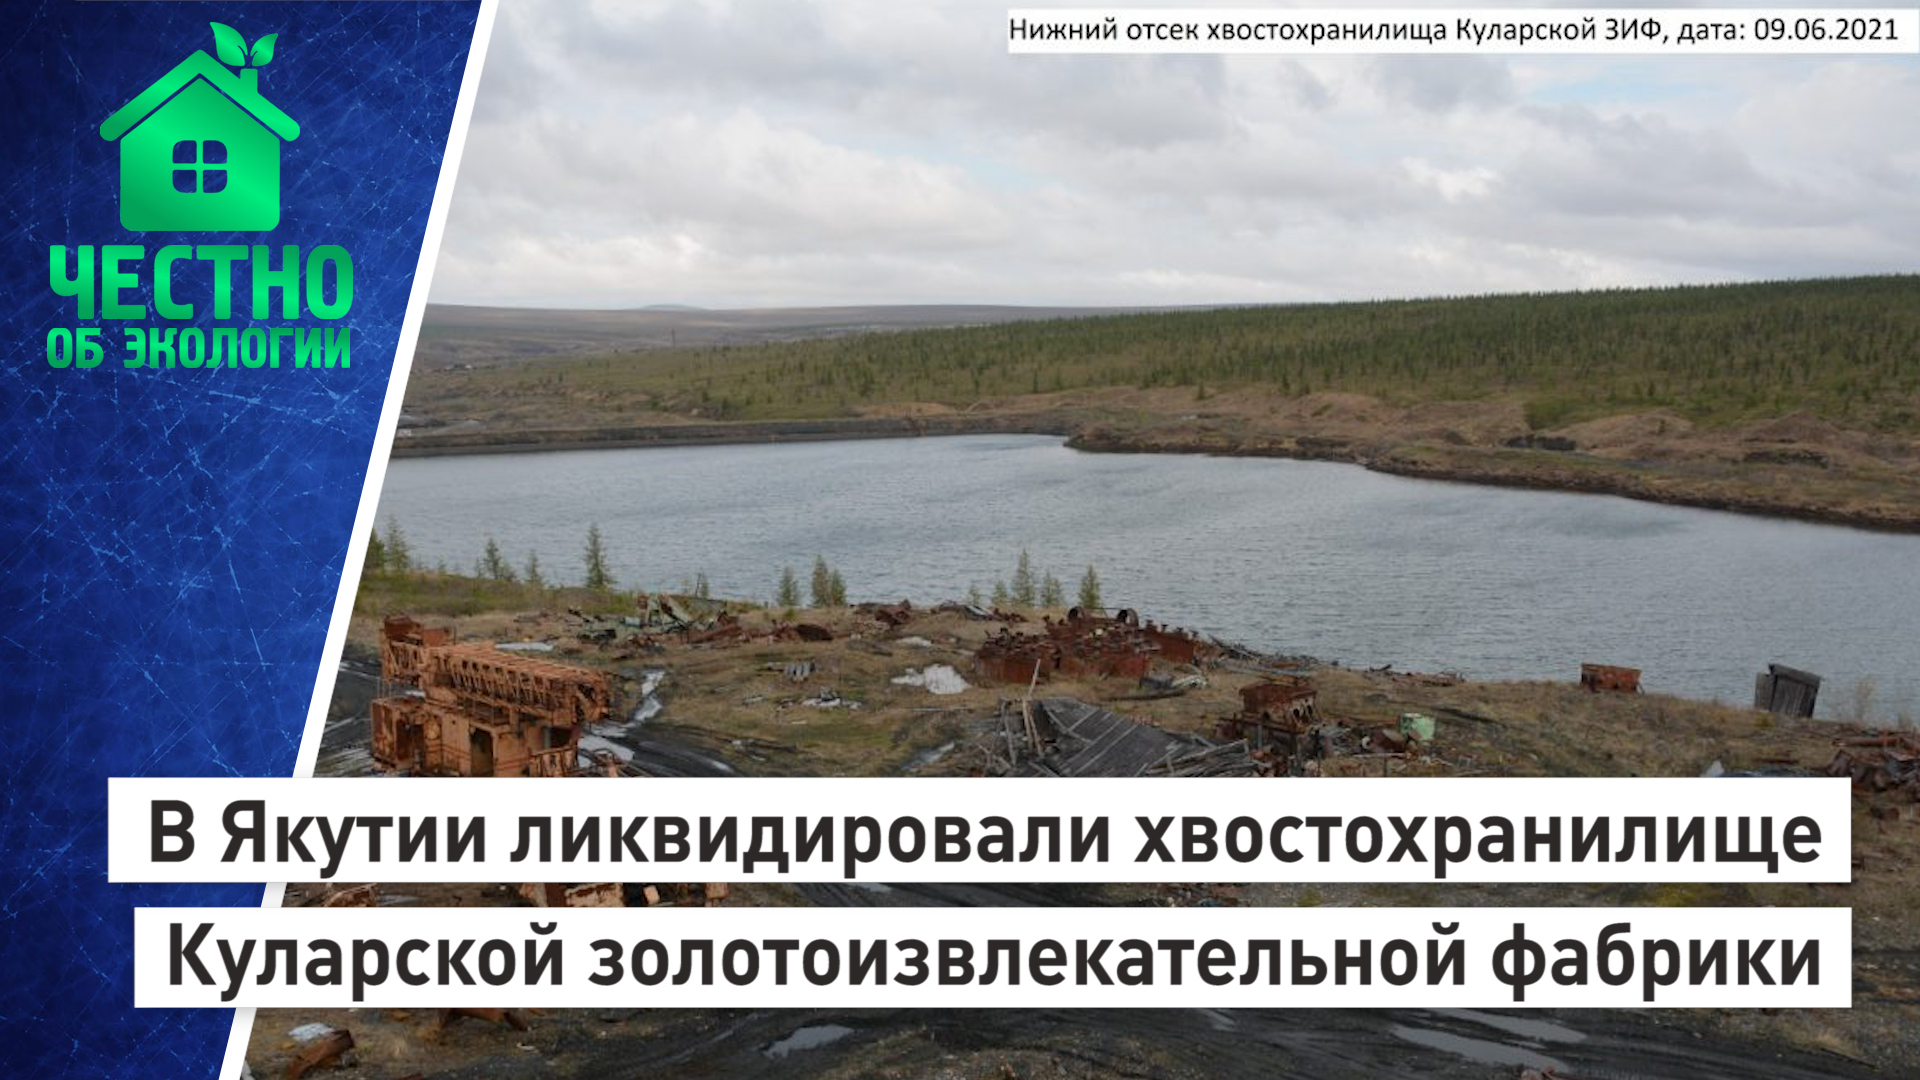 В Якутии ликвидировали хвостохранилище Куларской золотоизвлекательной фабрики.